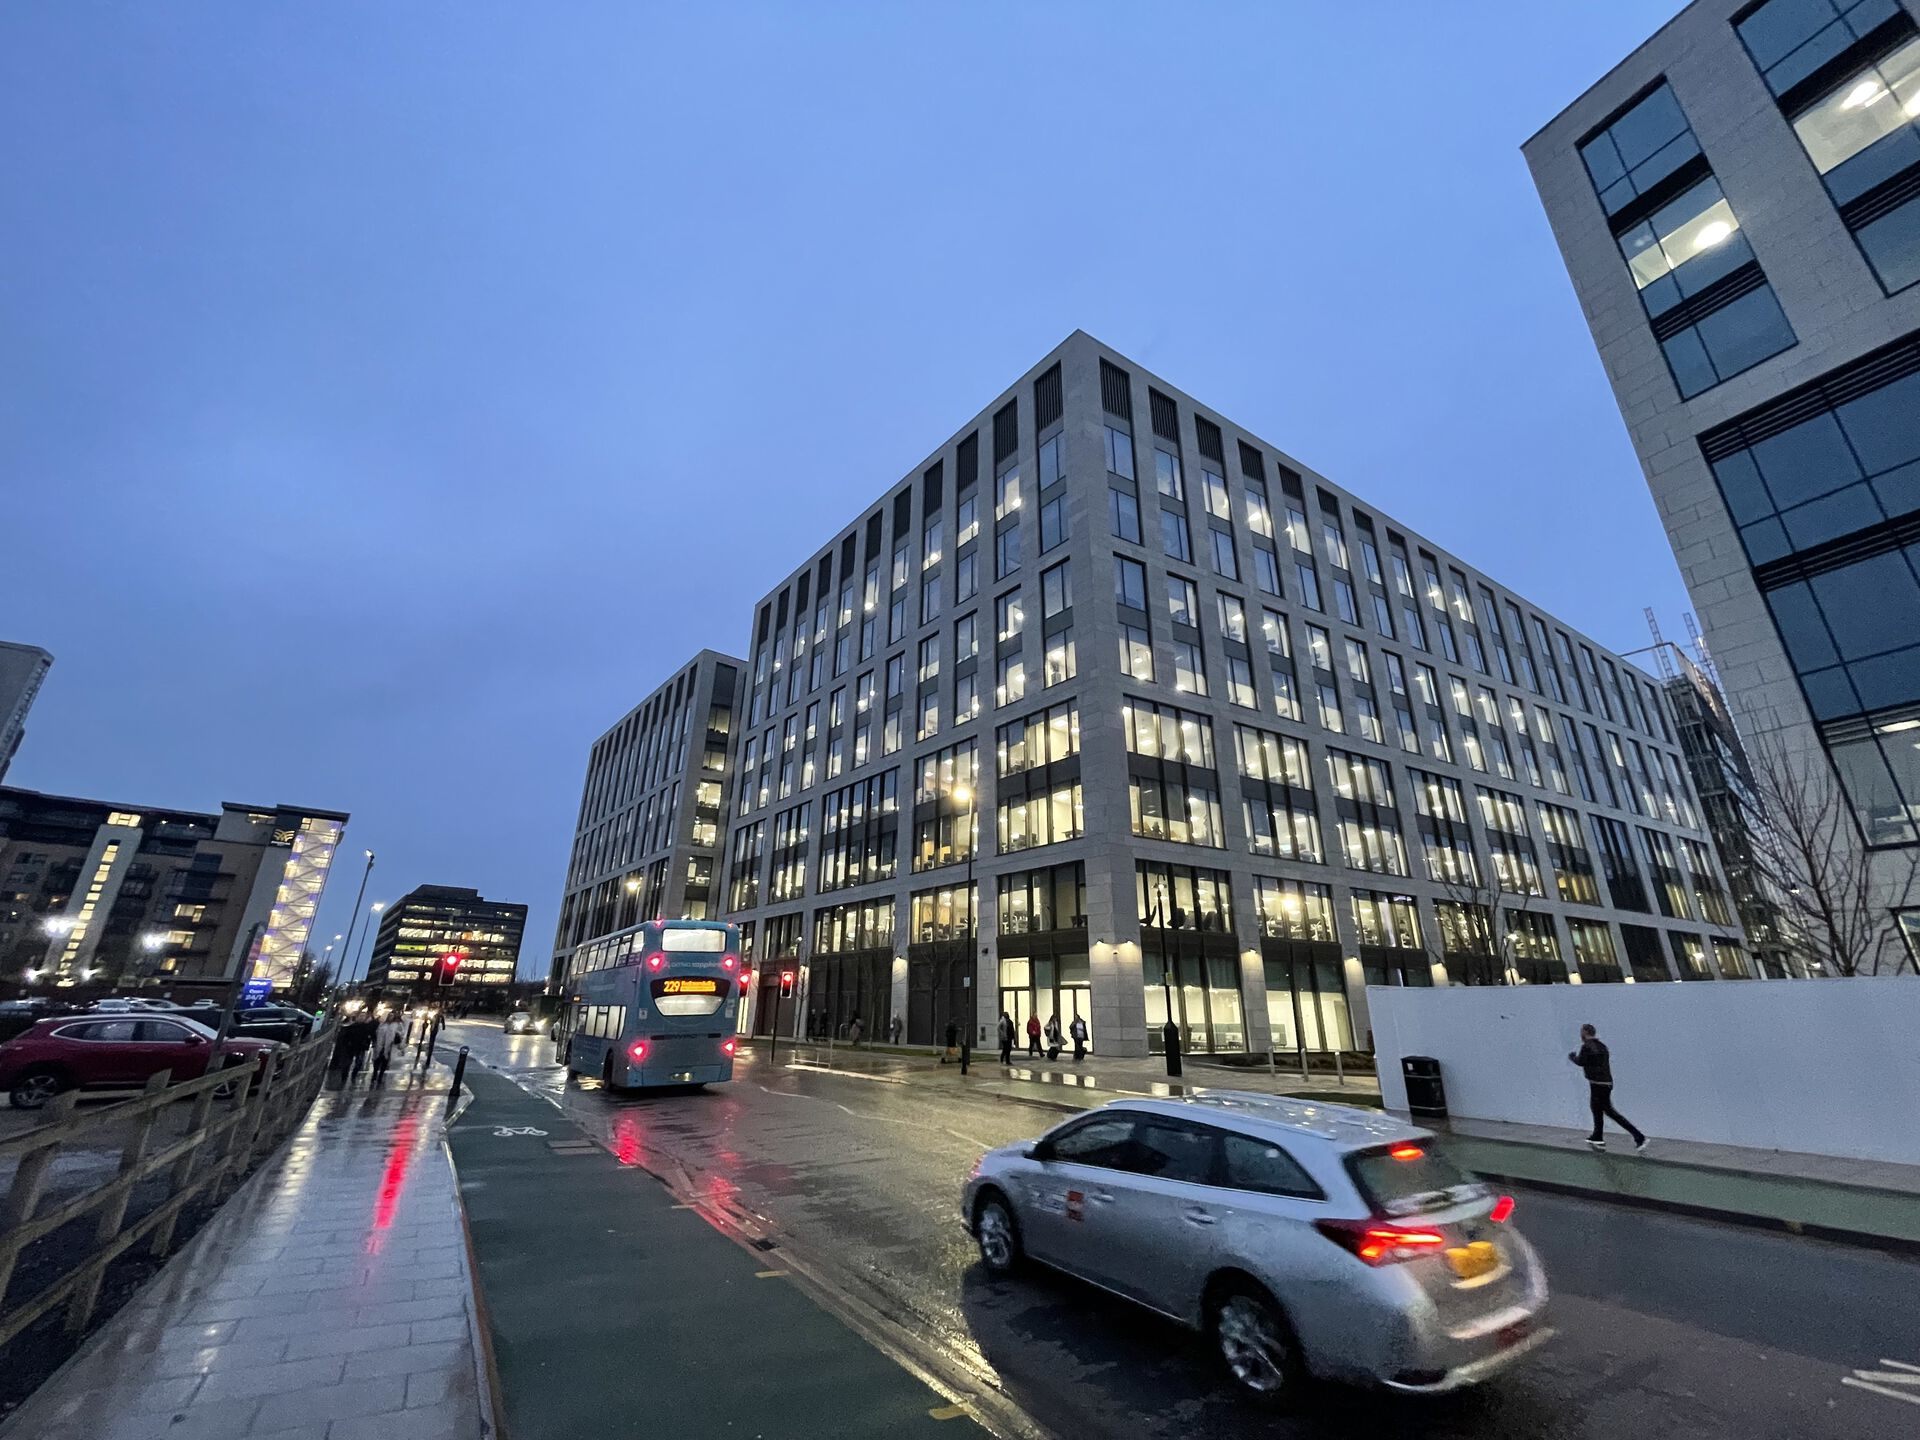 The headquarters of NHS Digital in Leeds